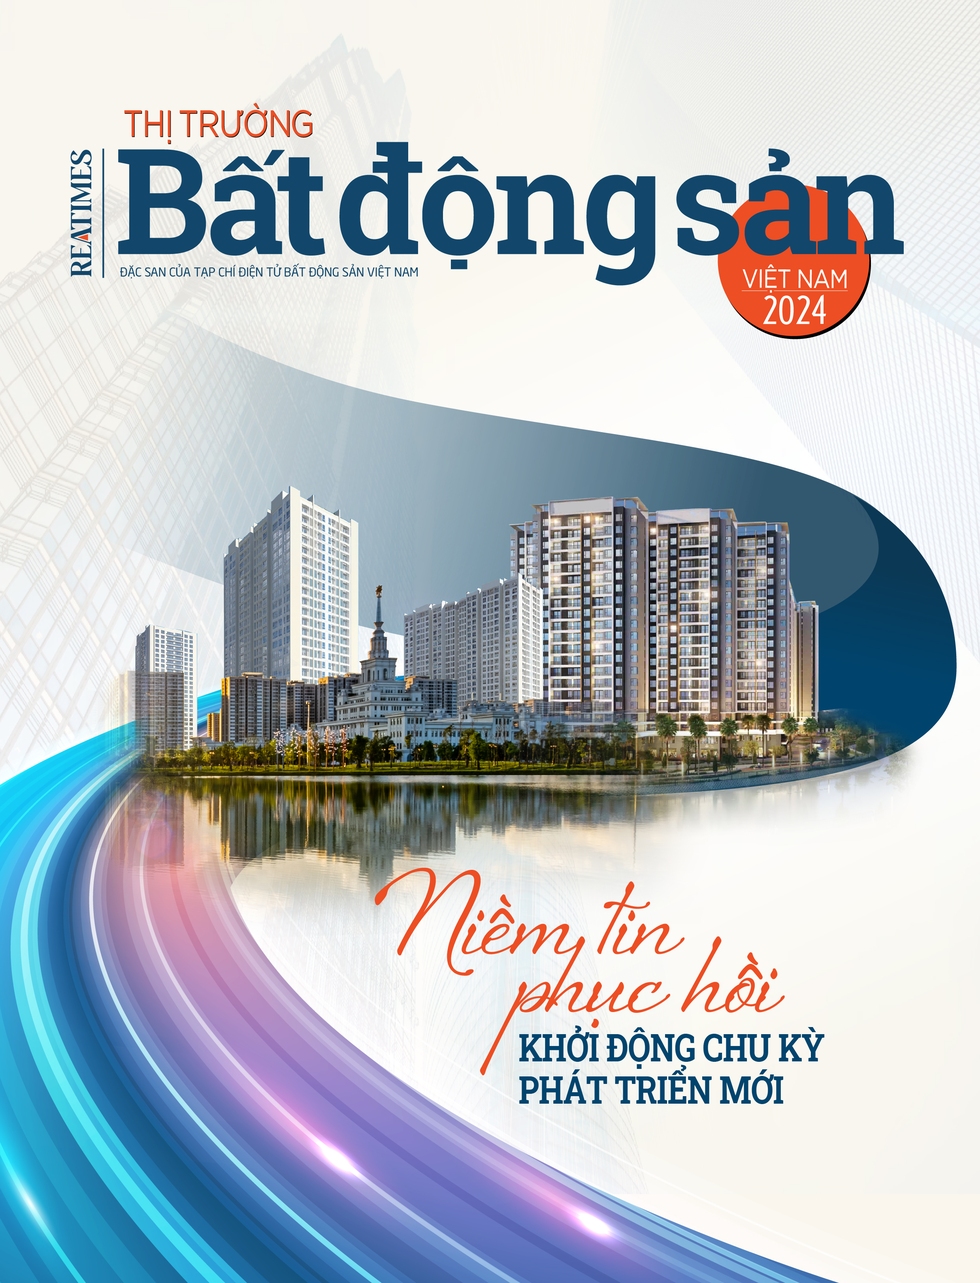 Đặc san Toàn cảnh thị trường bất động sản Việt Nam 2023 - 2024